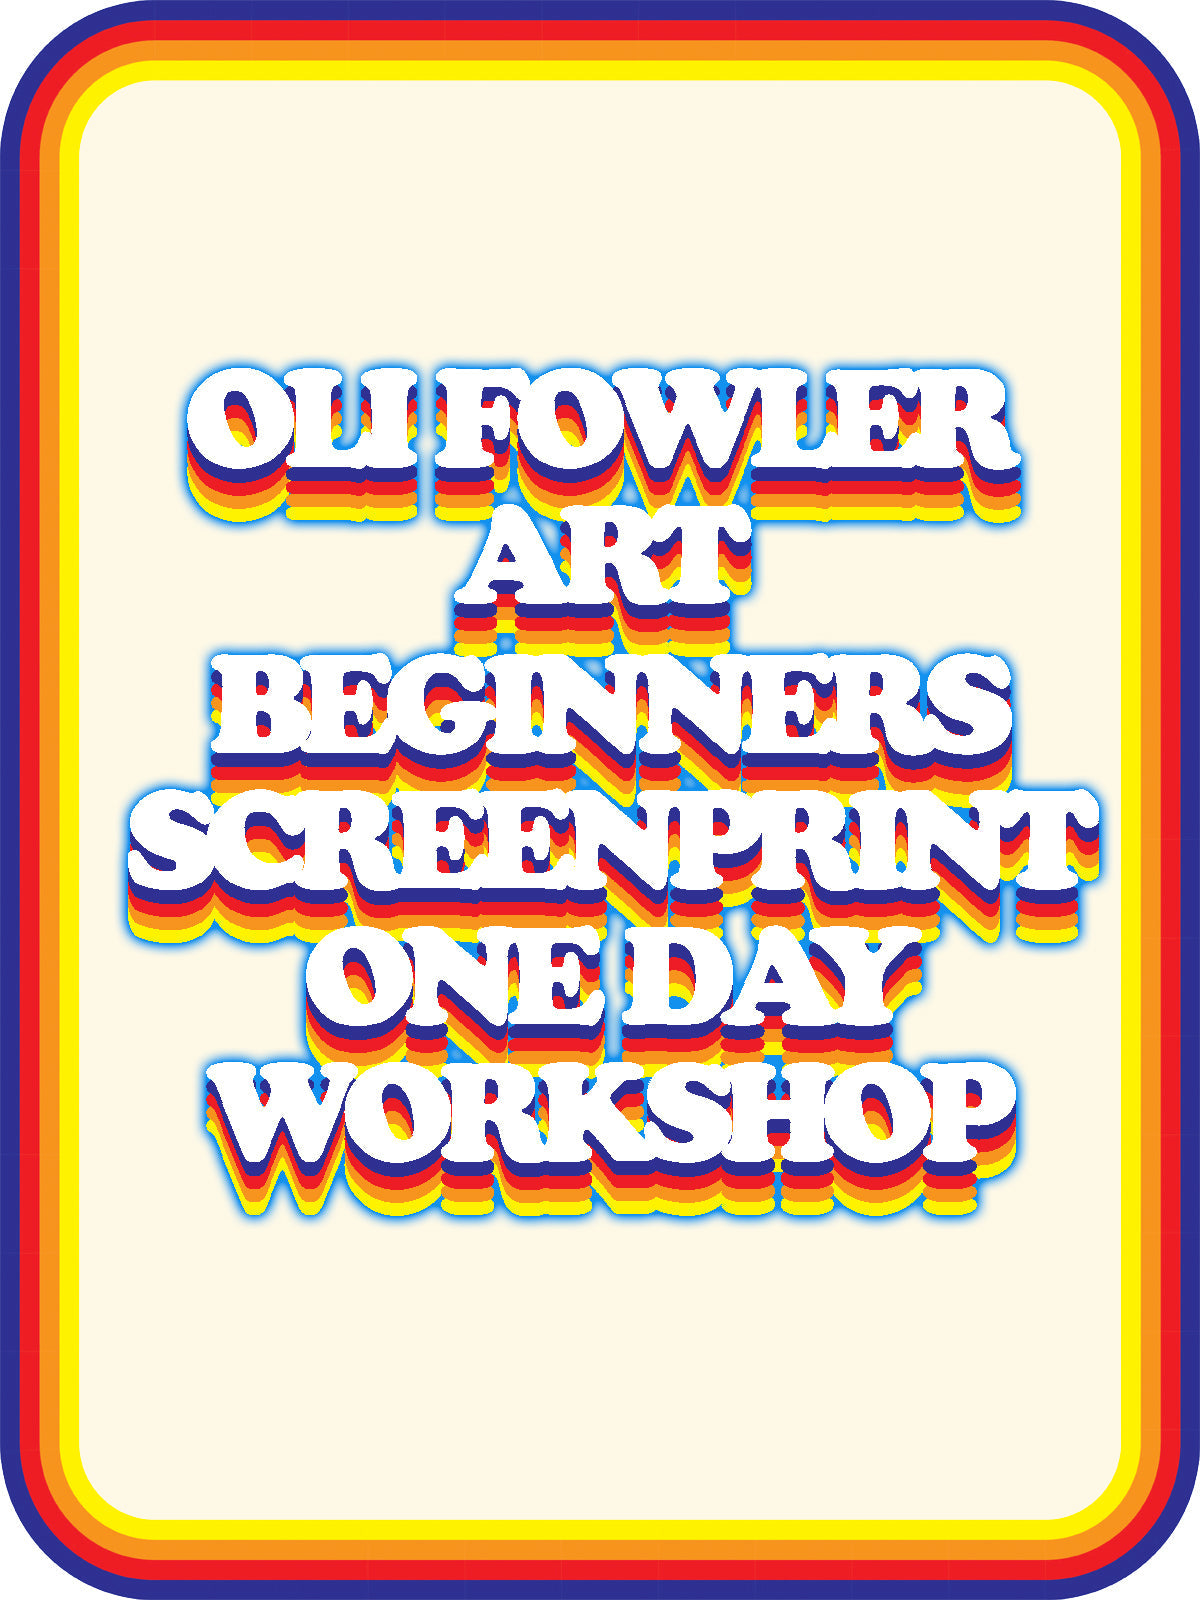 Beginners 1 Layer Screen Printing Workshop